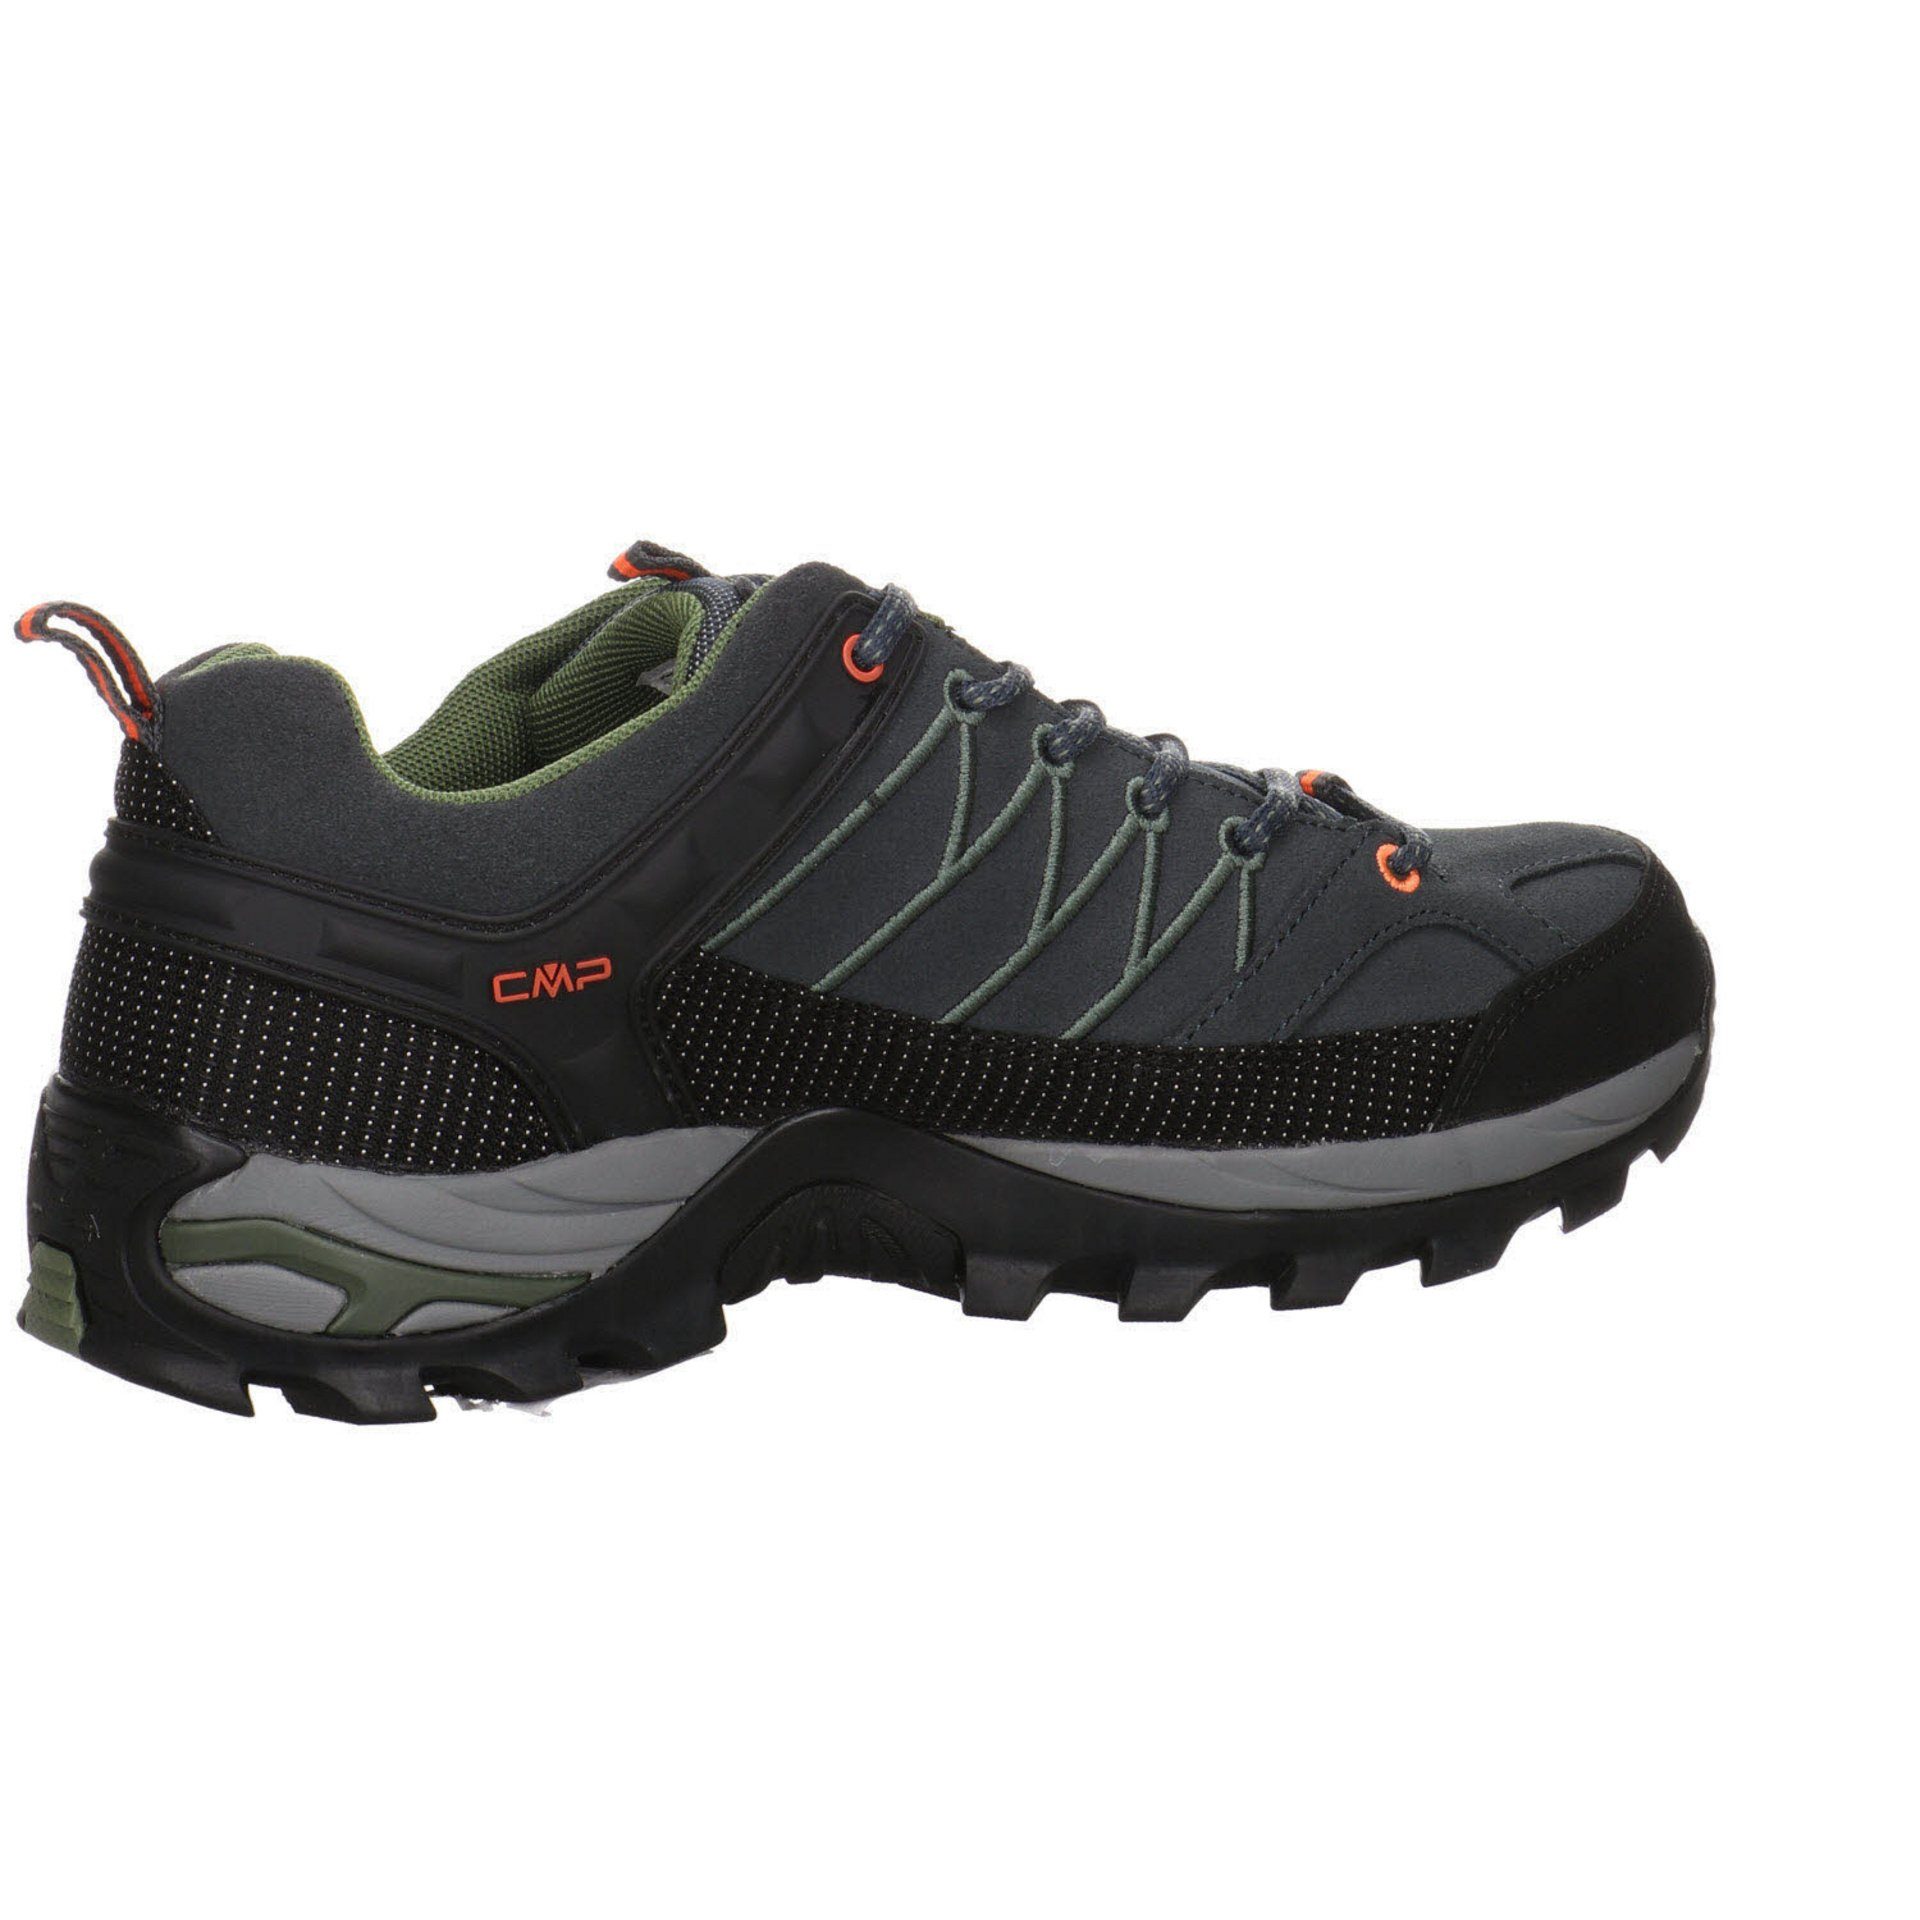 (03201805) Outdoorschuh Outdoor Outdoorschuh Low Schuhe CMP Grau Herren Rigel Leder-/Textilkombination